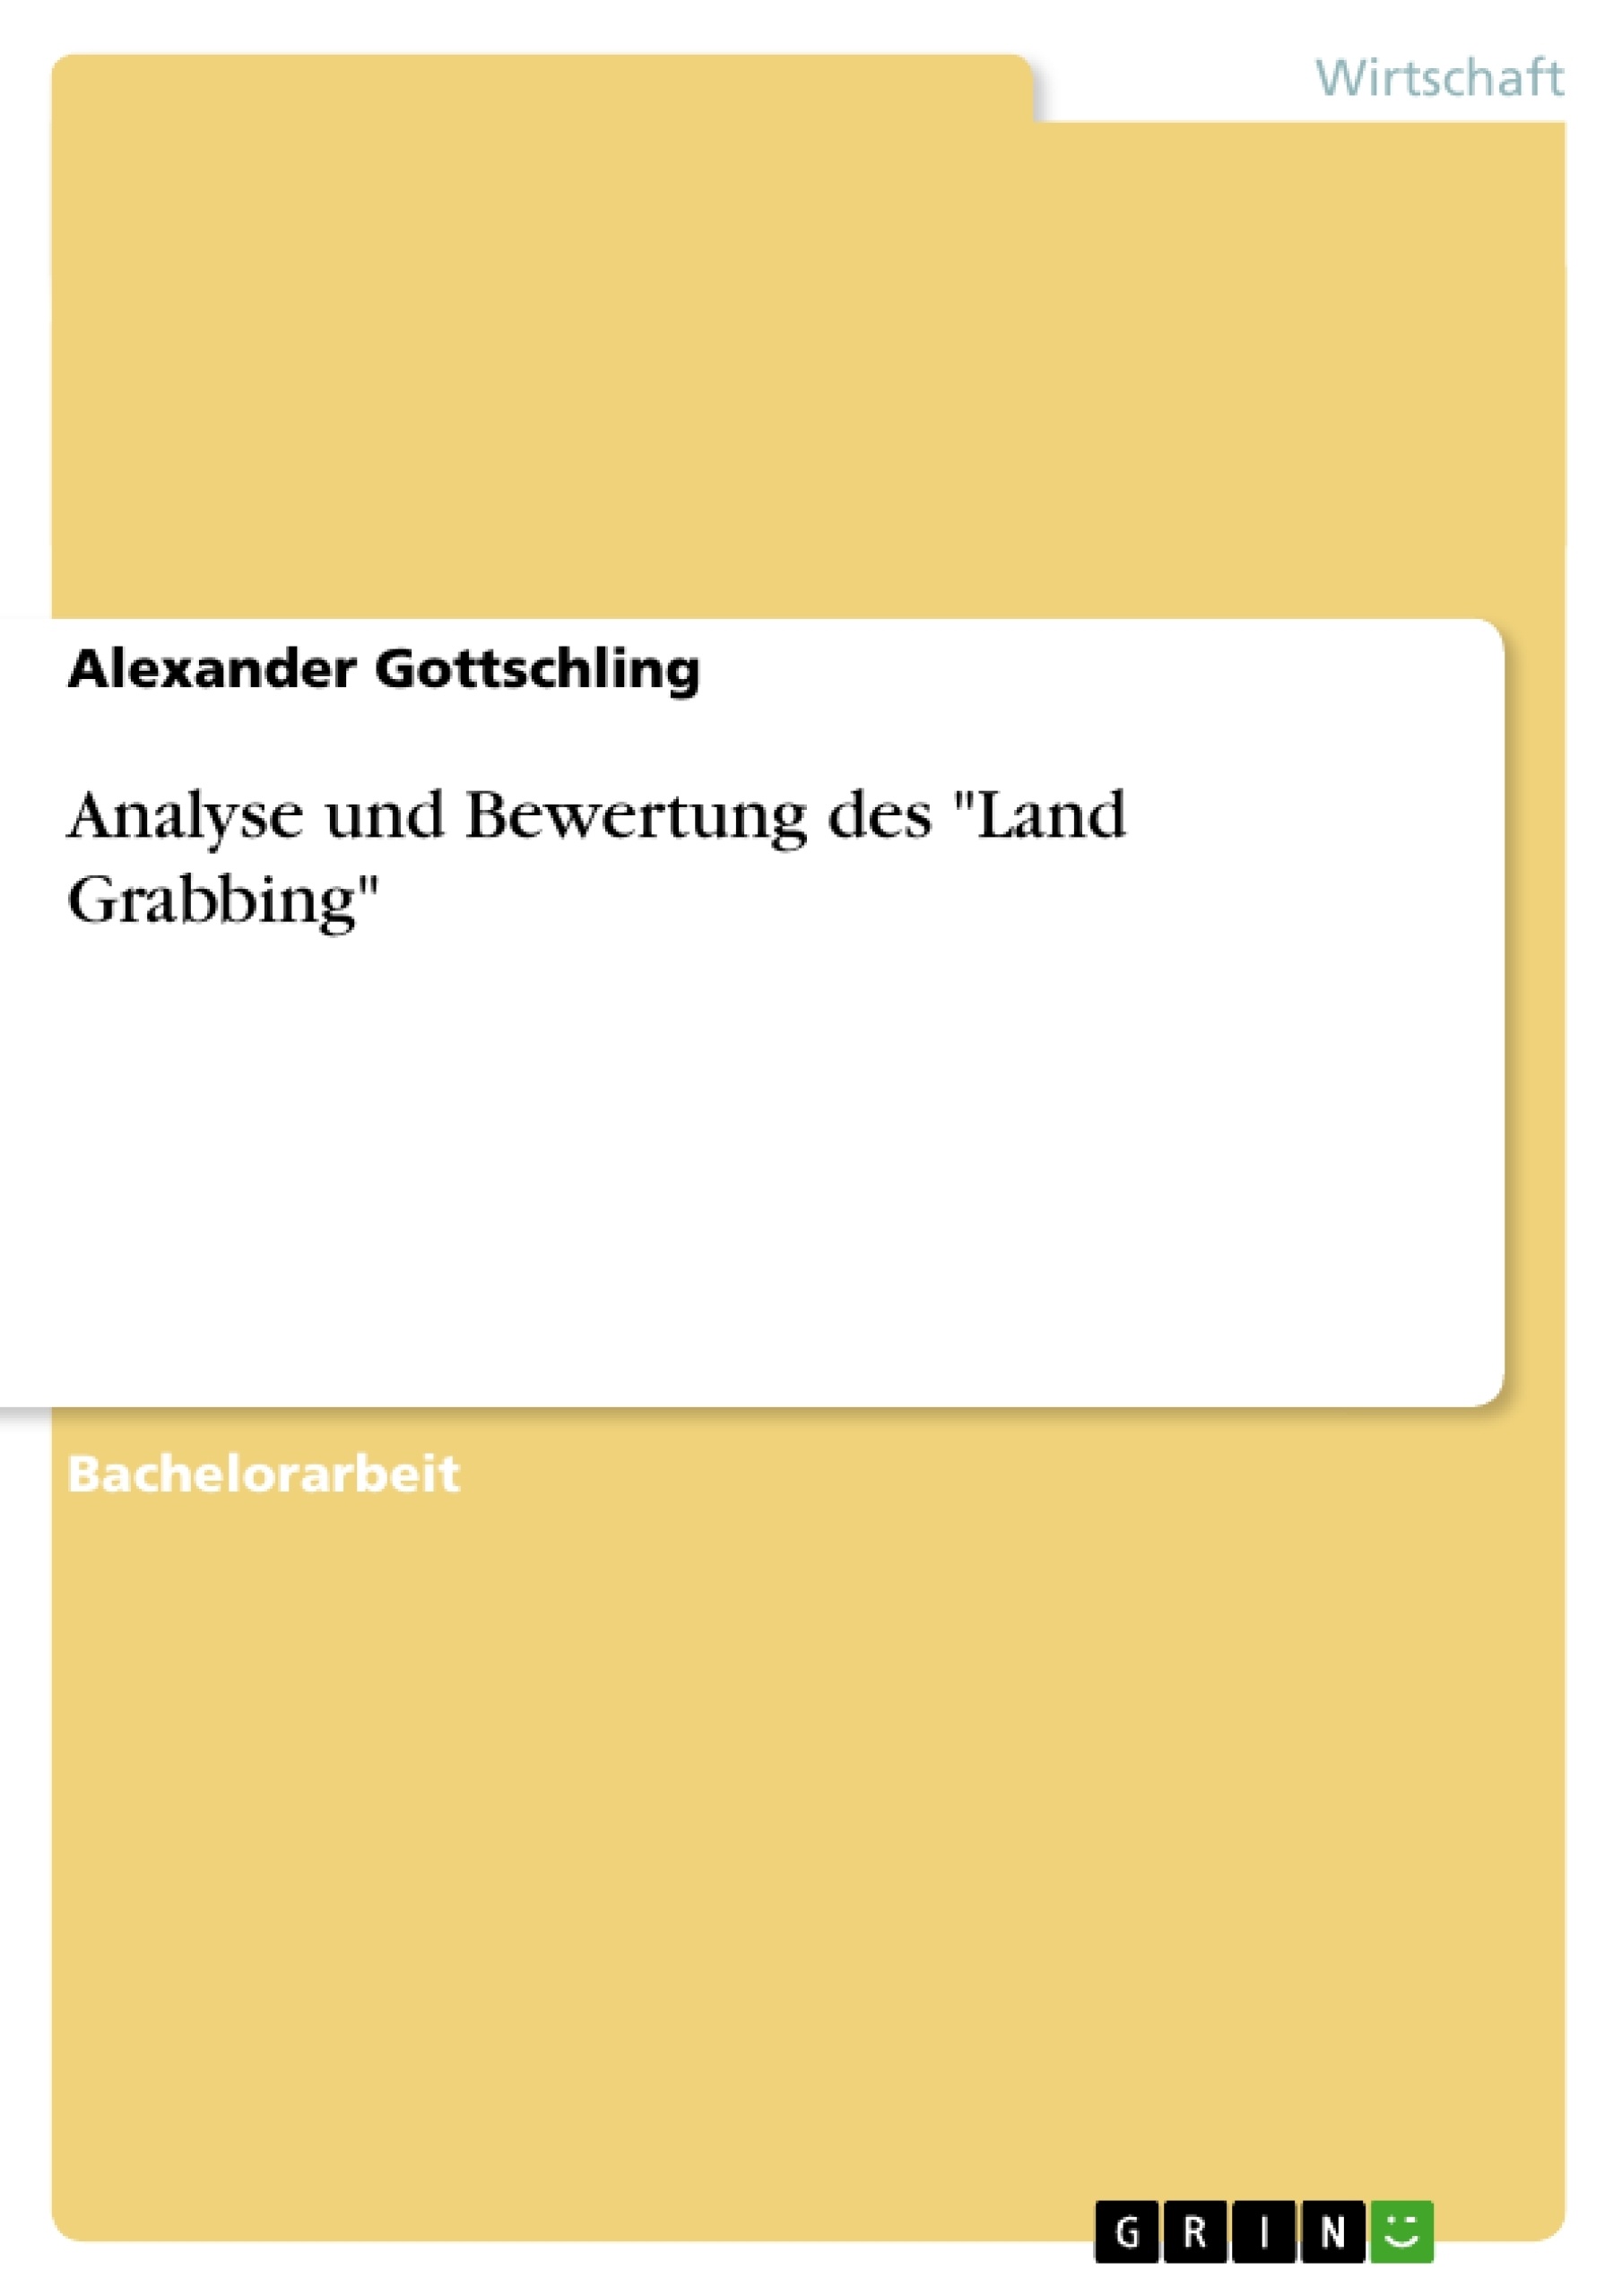 Titre: Analyse und Bewertung des "Land Grabbing"